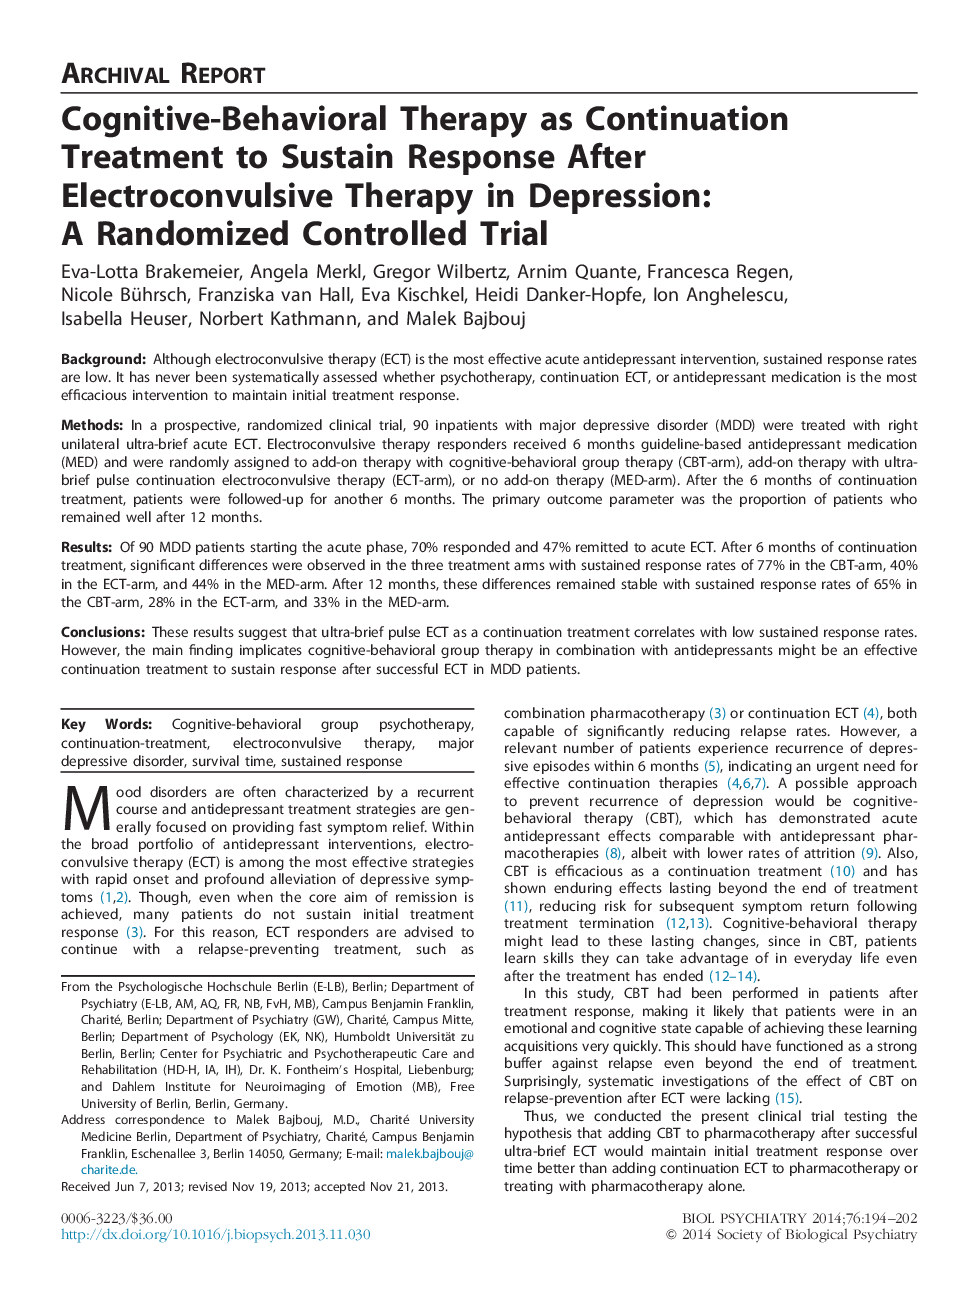 درمان رفتاری شناختی-رفتاری به عنوان درمان مداوم برای پاسخ دادن به پاسخ پس از درمان الکترووکانوسی در افسردگی: یک آزمایش تصادفی کنترل شده 